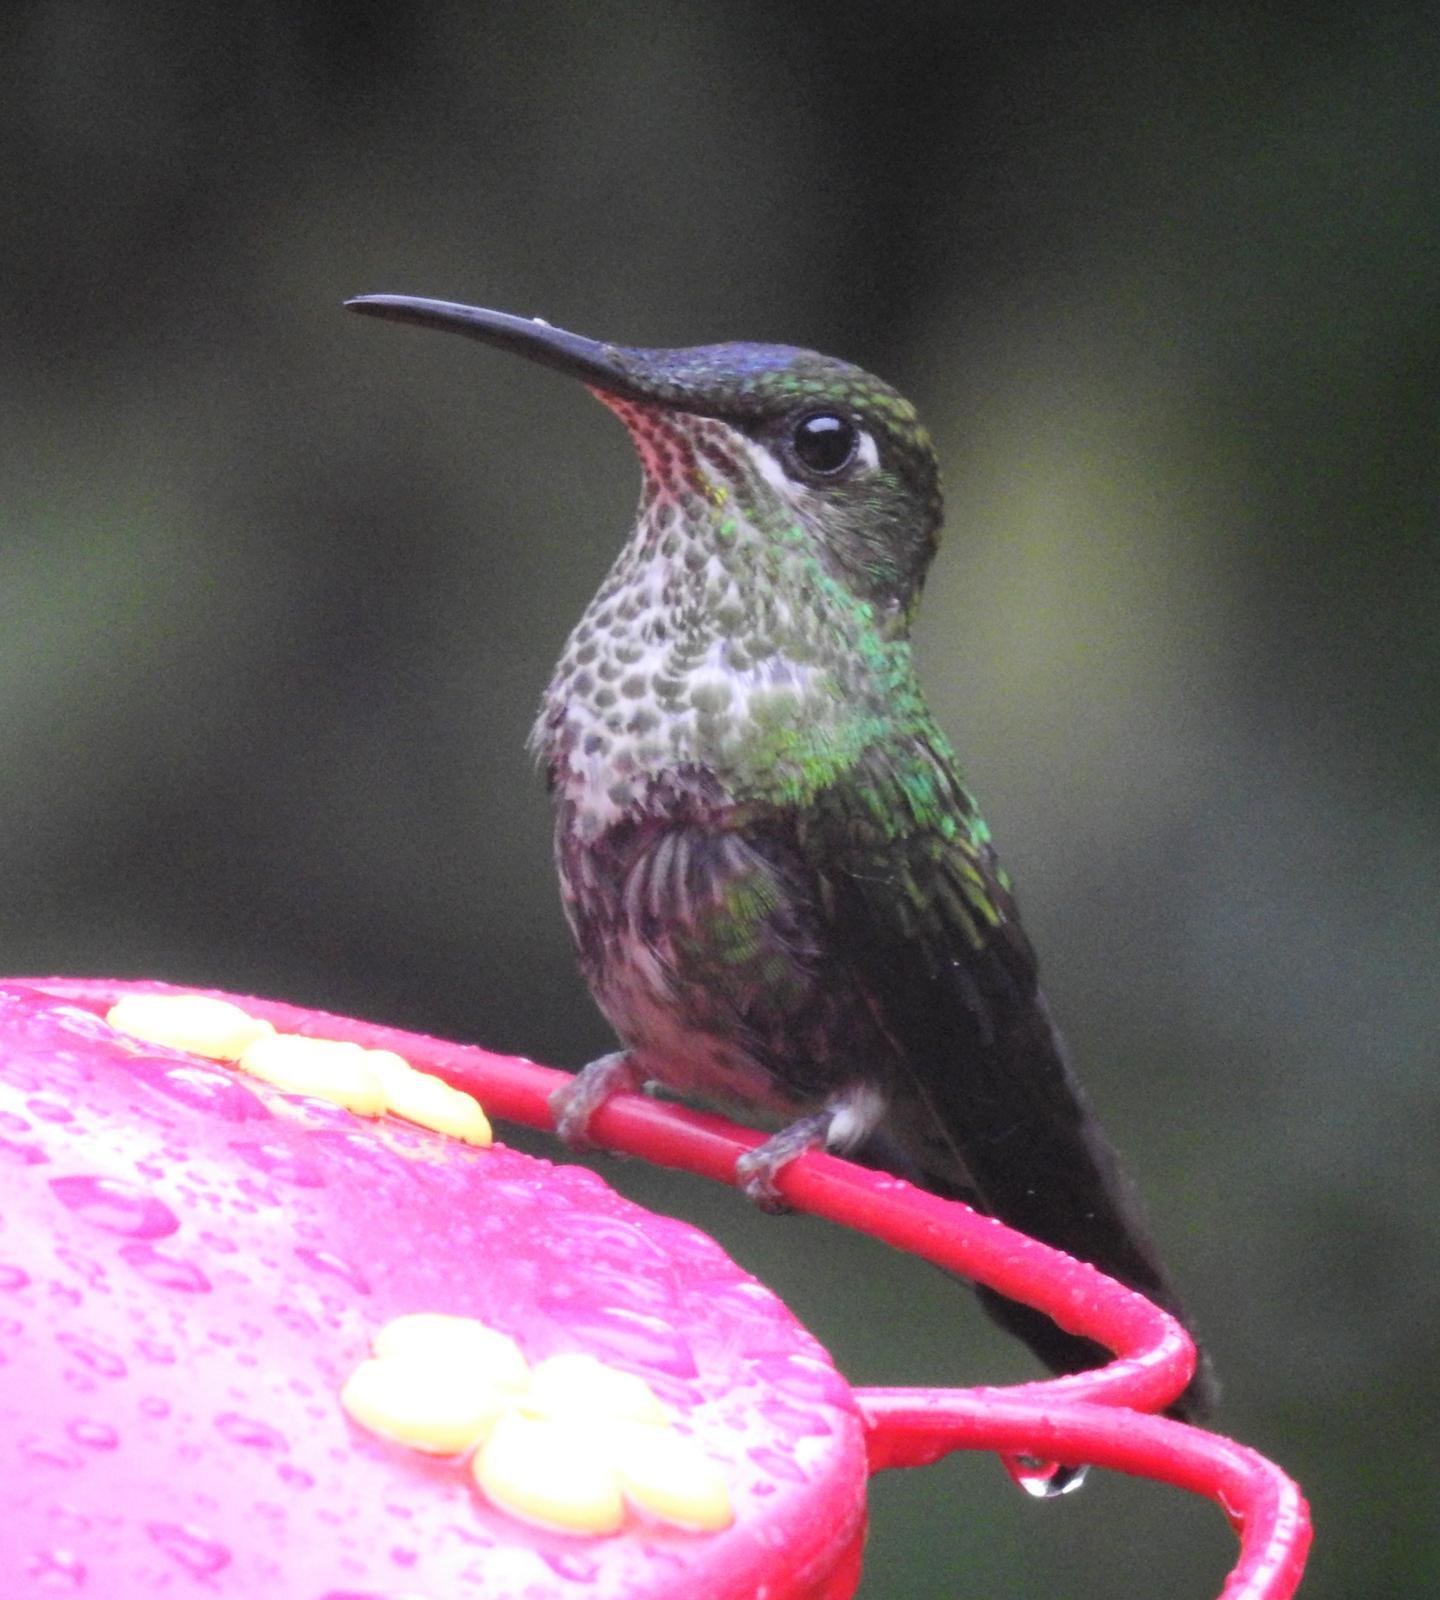 Many-spotted Hummingbird Photo by John Licharson